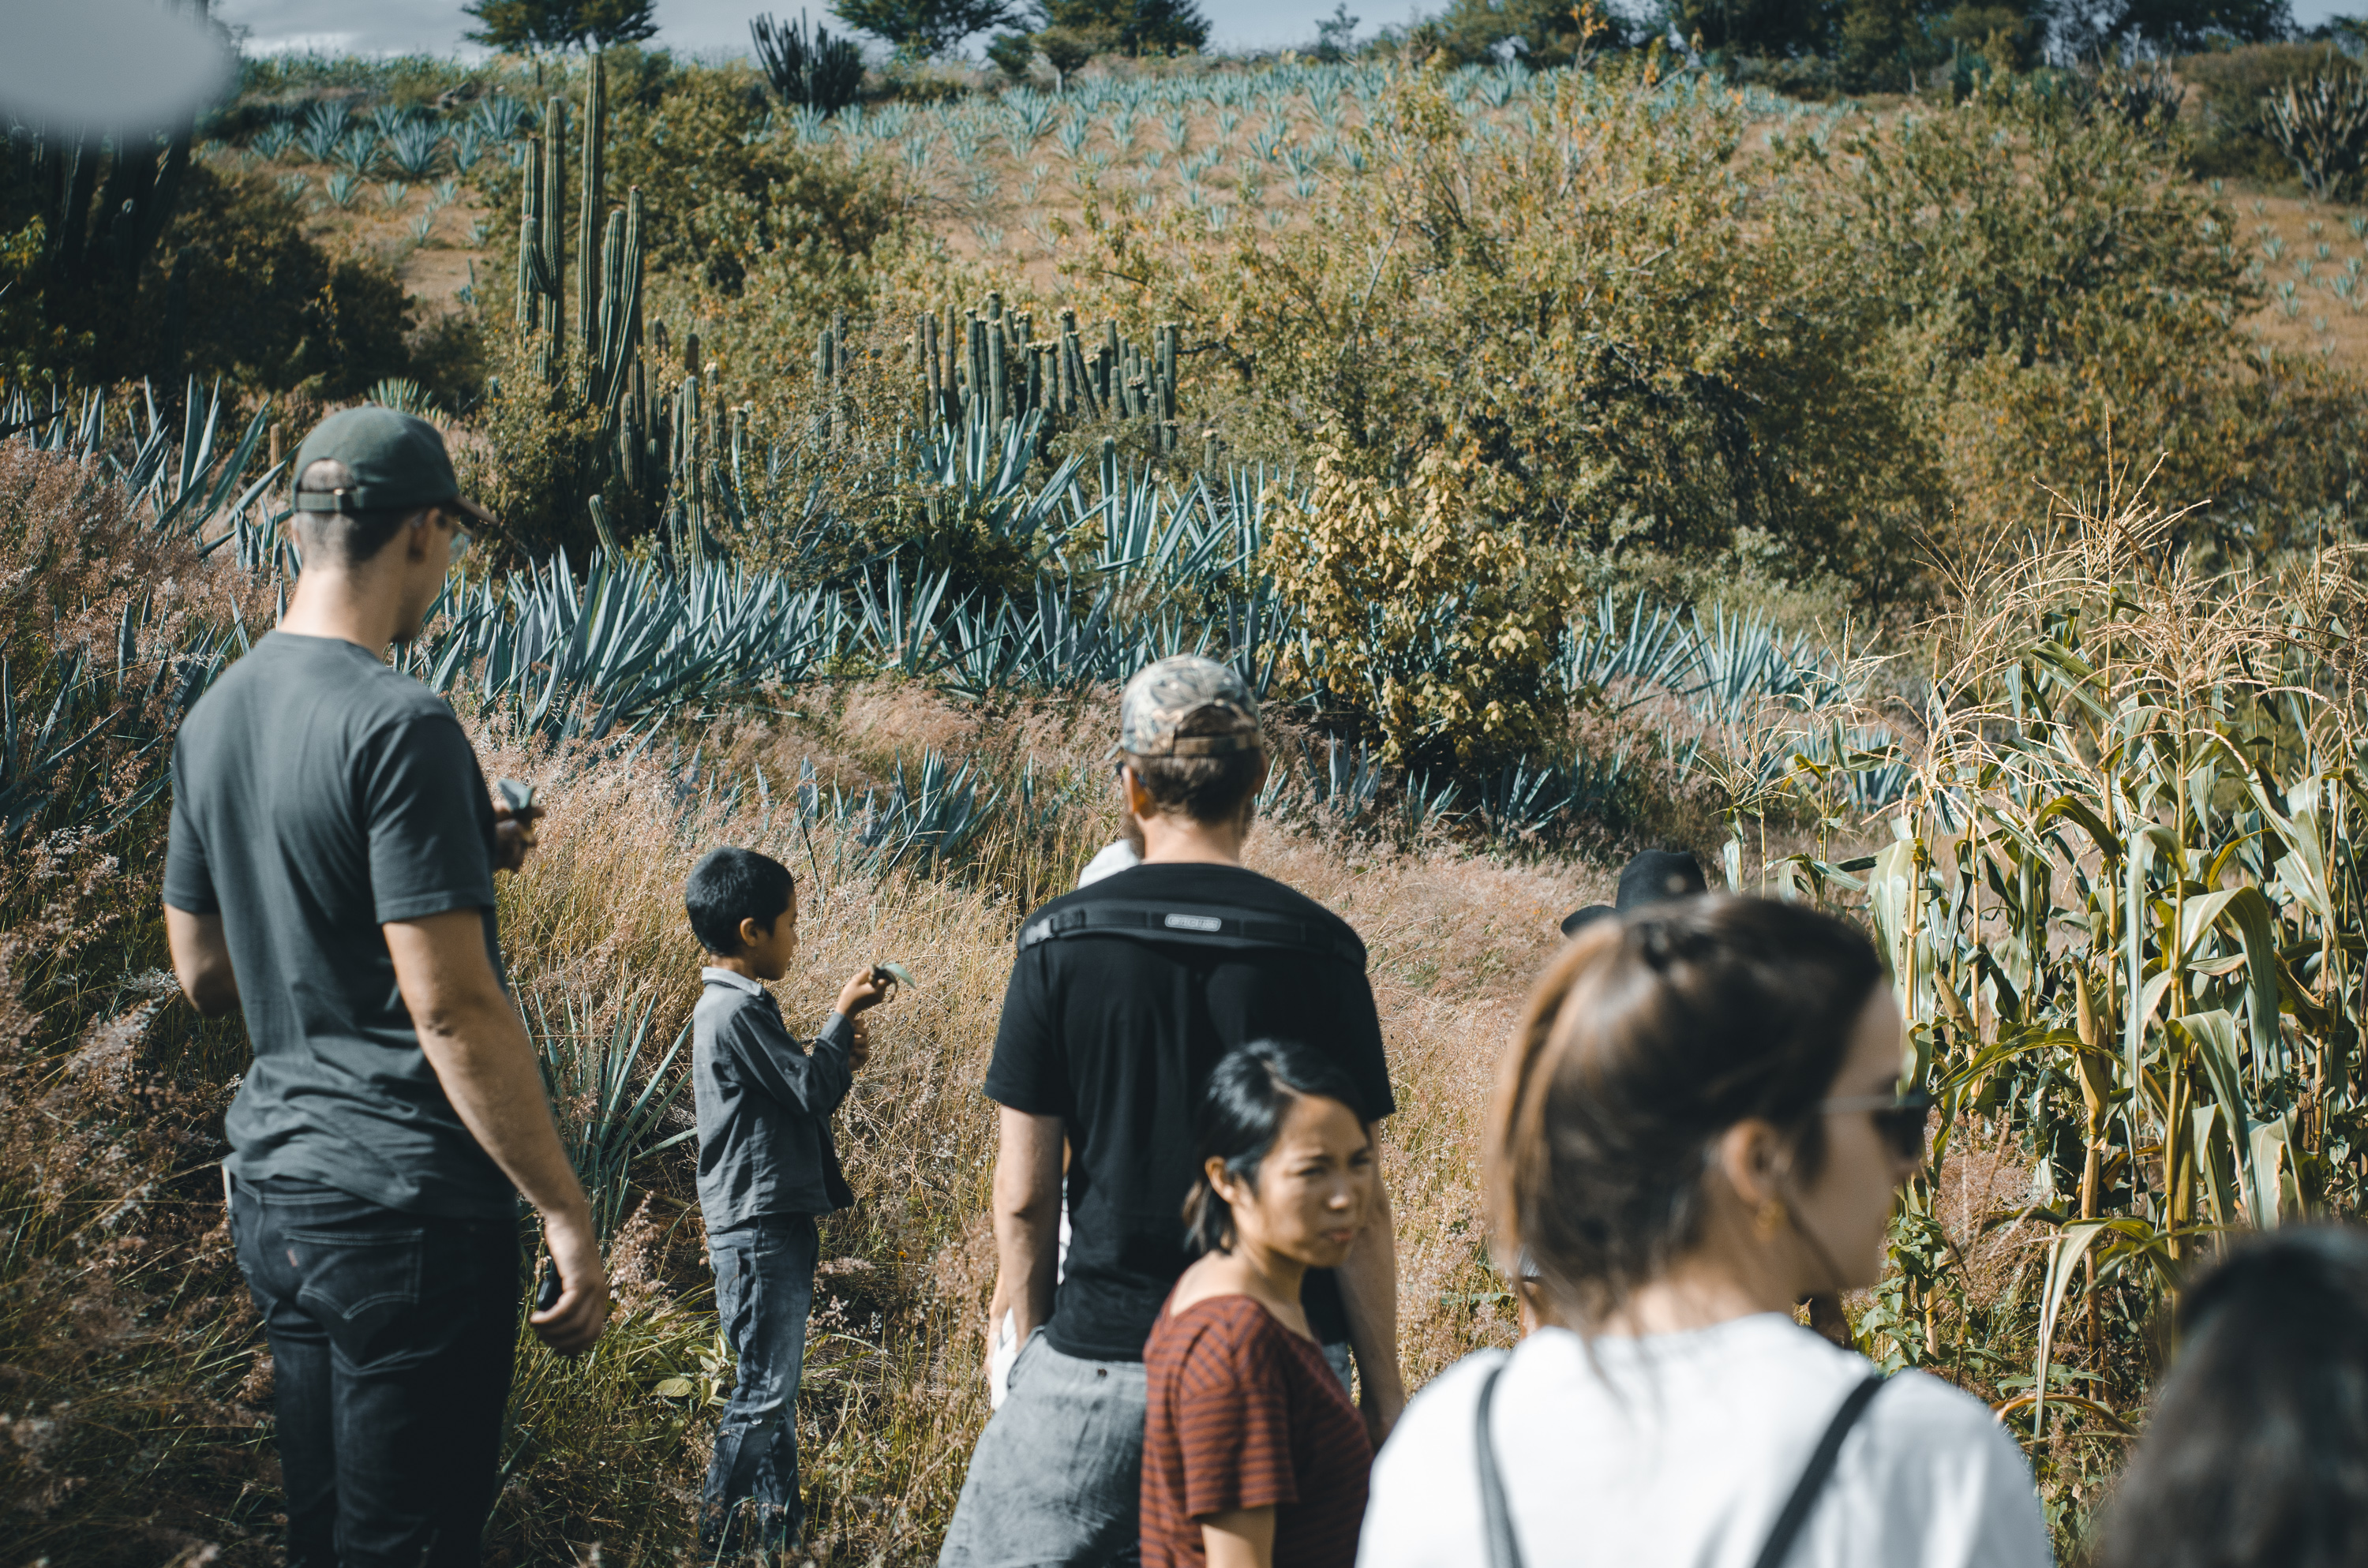 Oásis de mezcal: reforestación, captación de agua y cultivo de agave en los Valles Centrales de Oaxaca